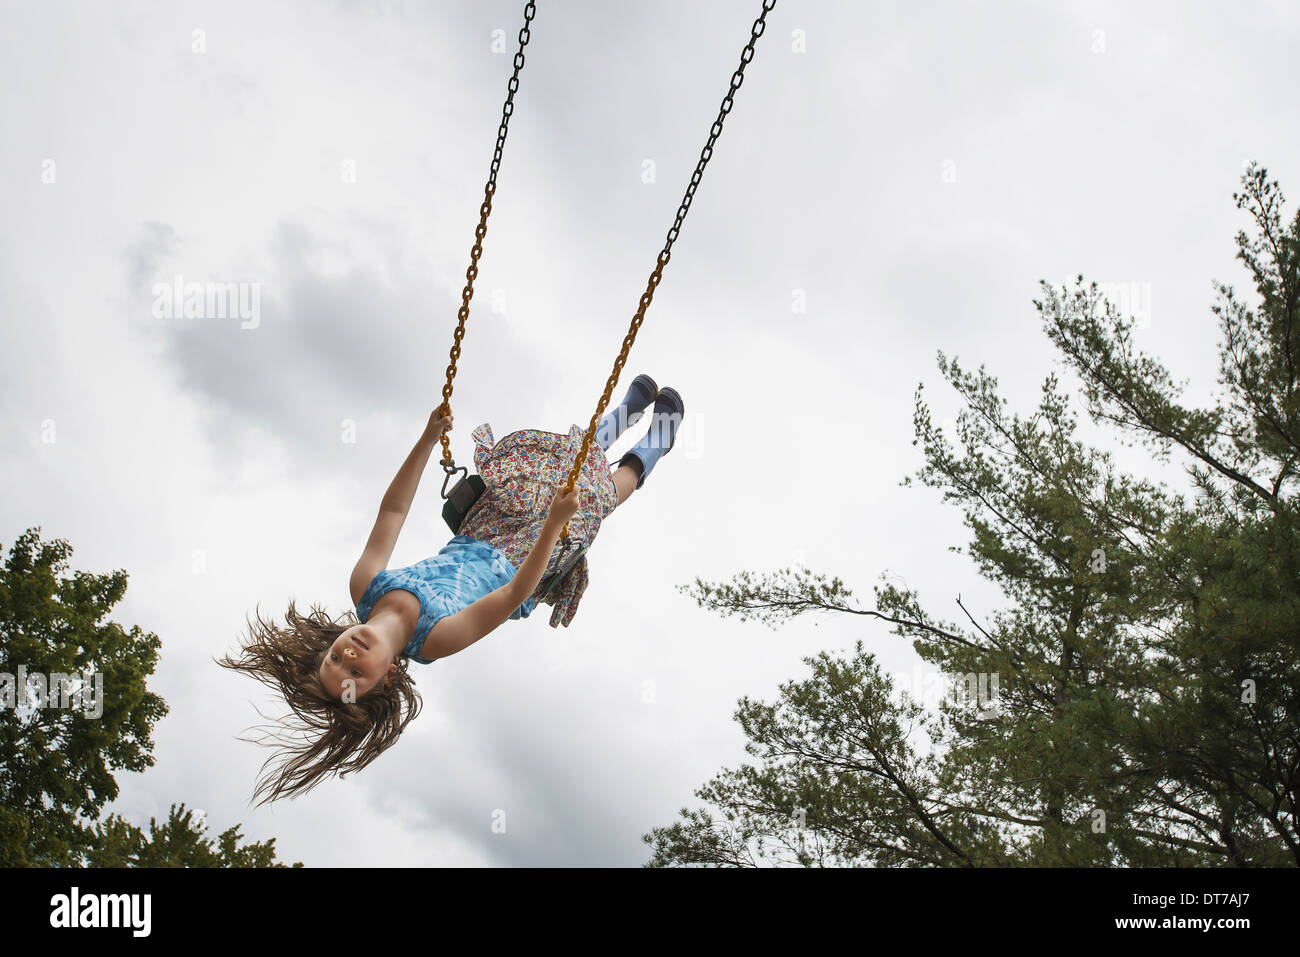 Une fille sur une balançoire de corde dans l'air haut Woodstock New York USA USA Banque D'Images